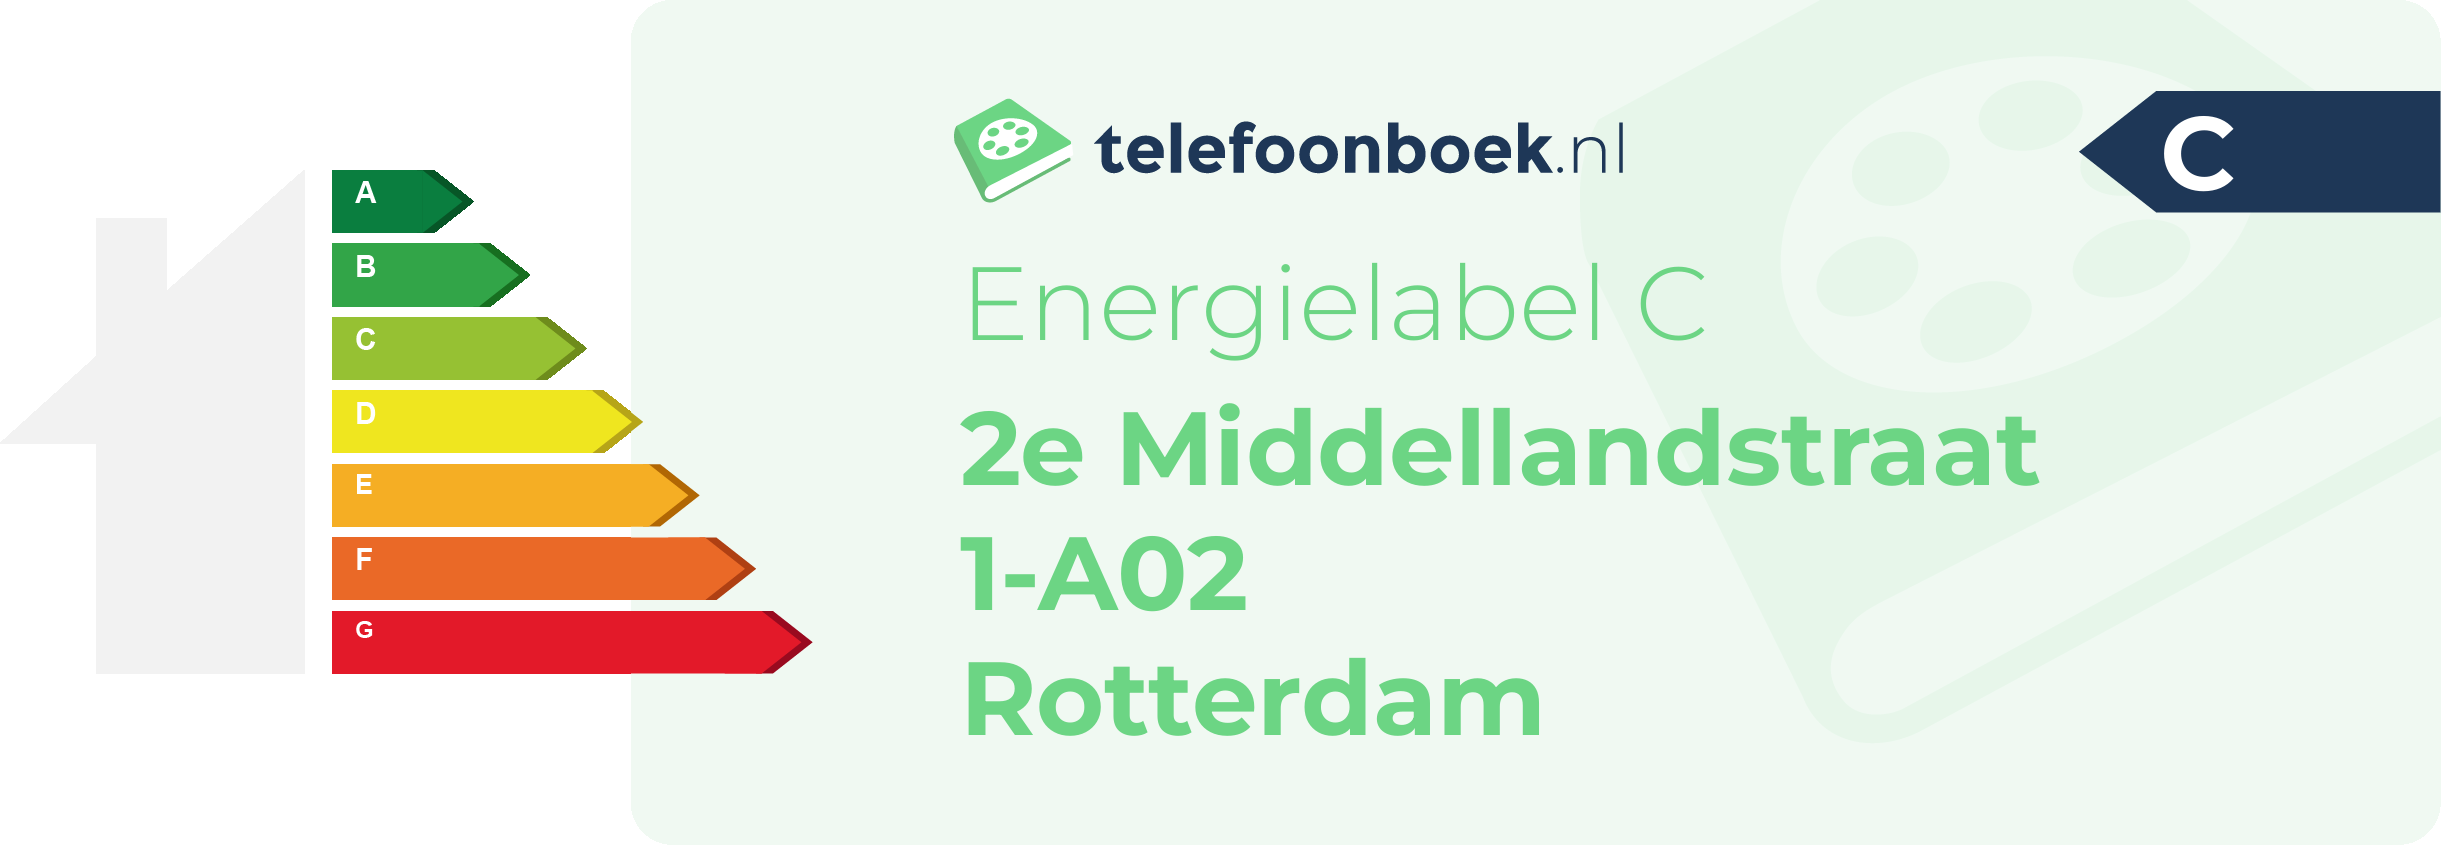 Energielabel 2e Middellandstraat 1-A02 Rotterdam